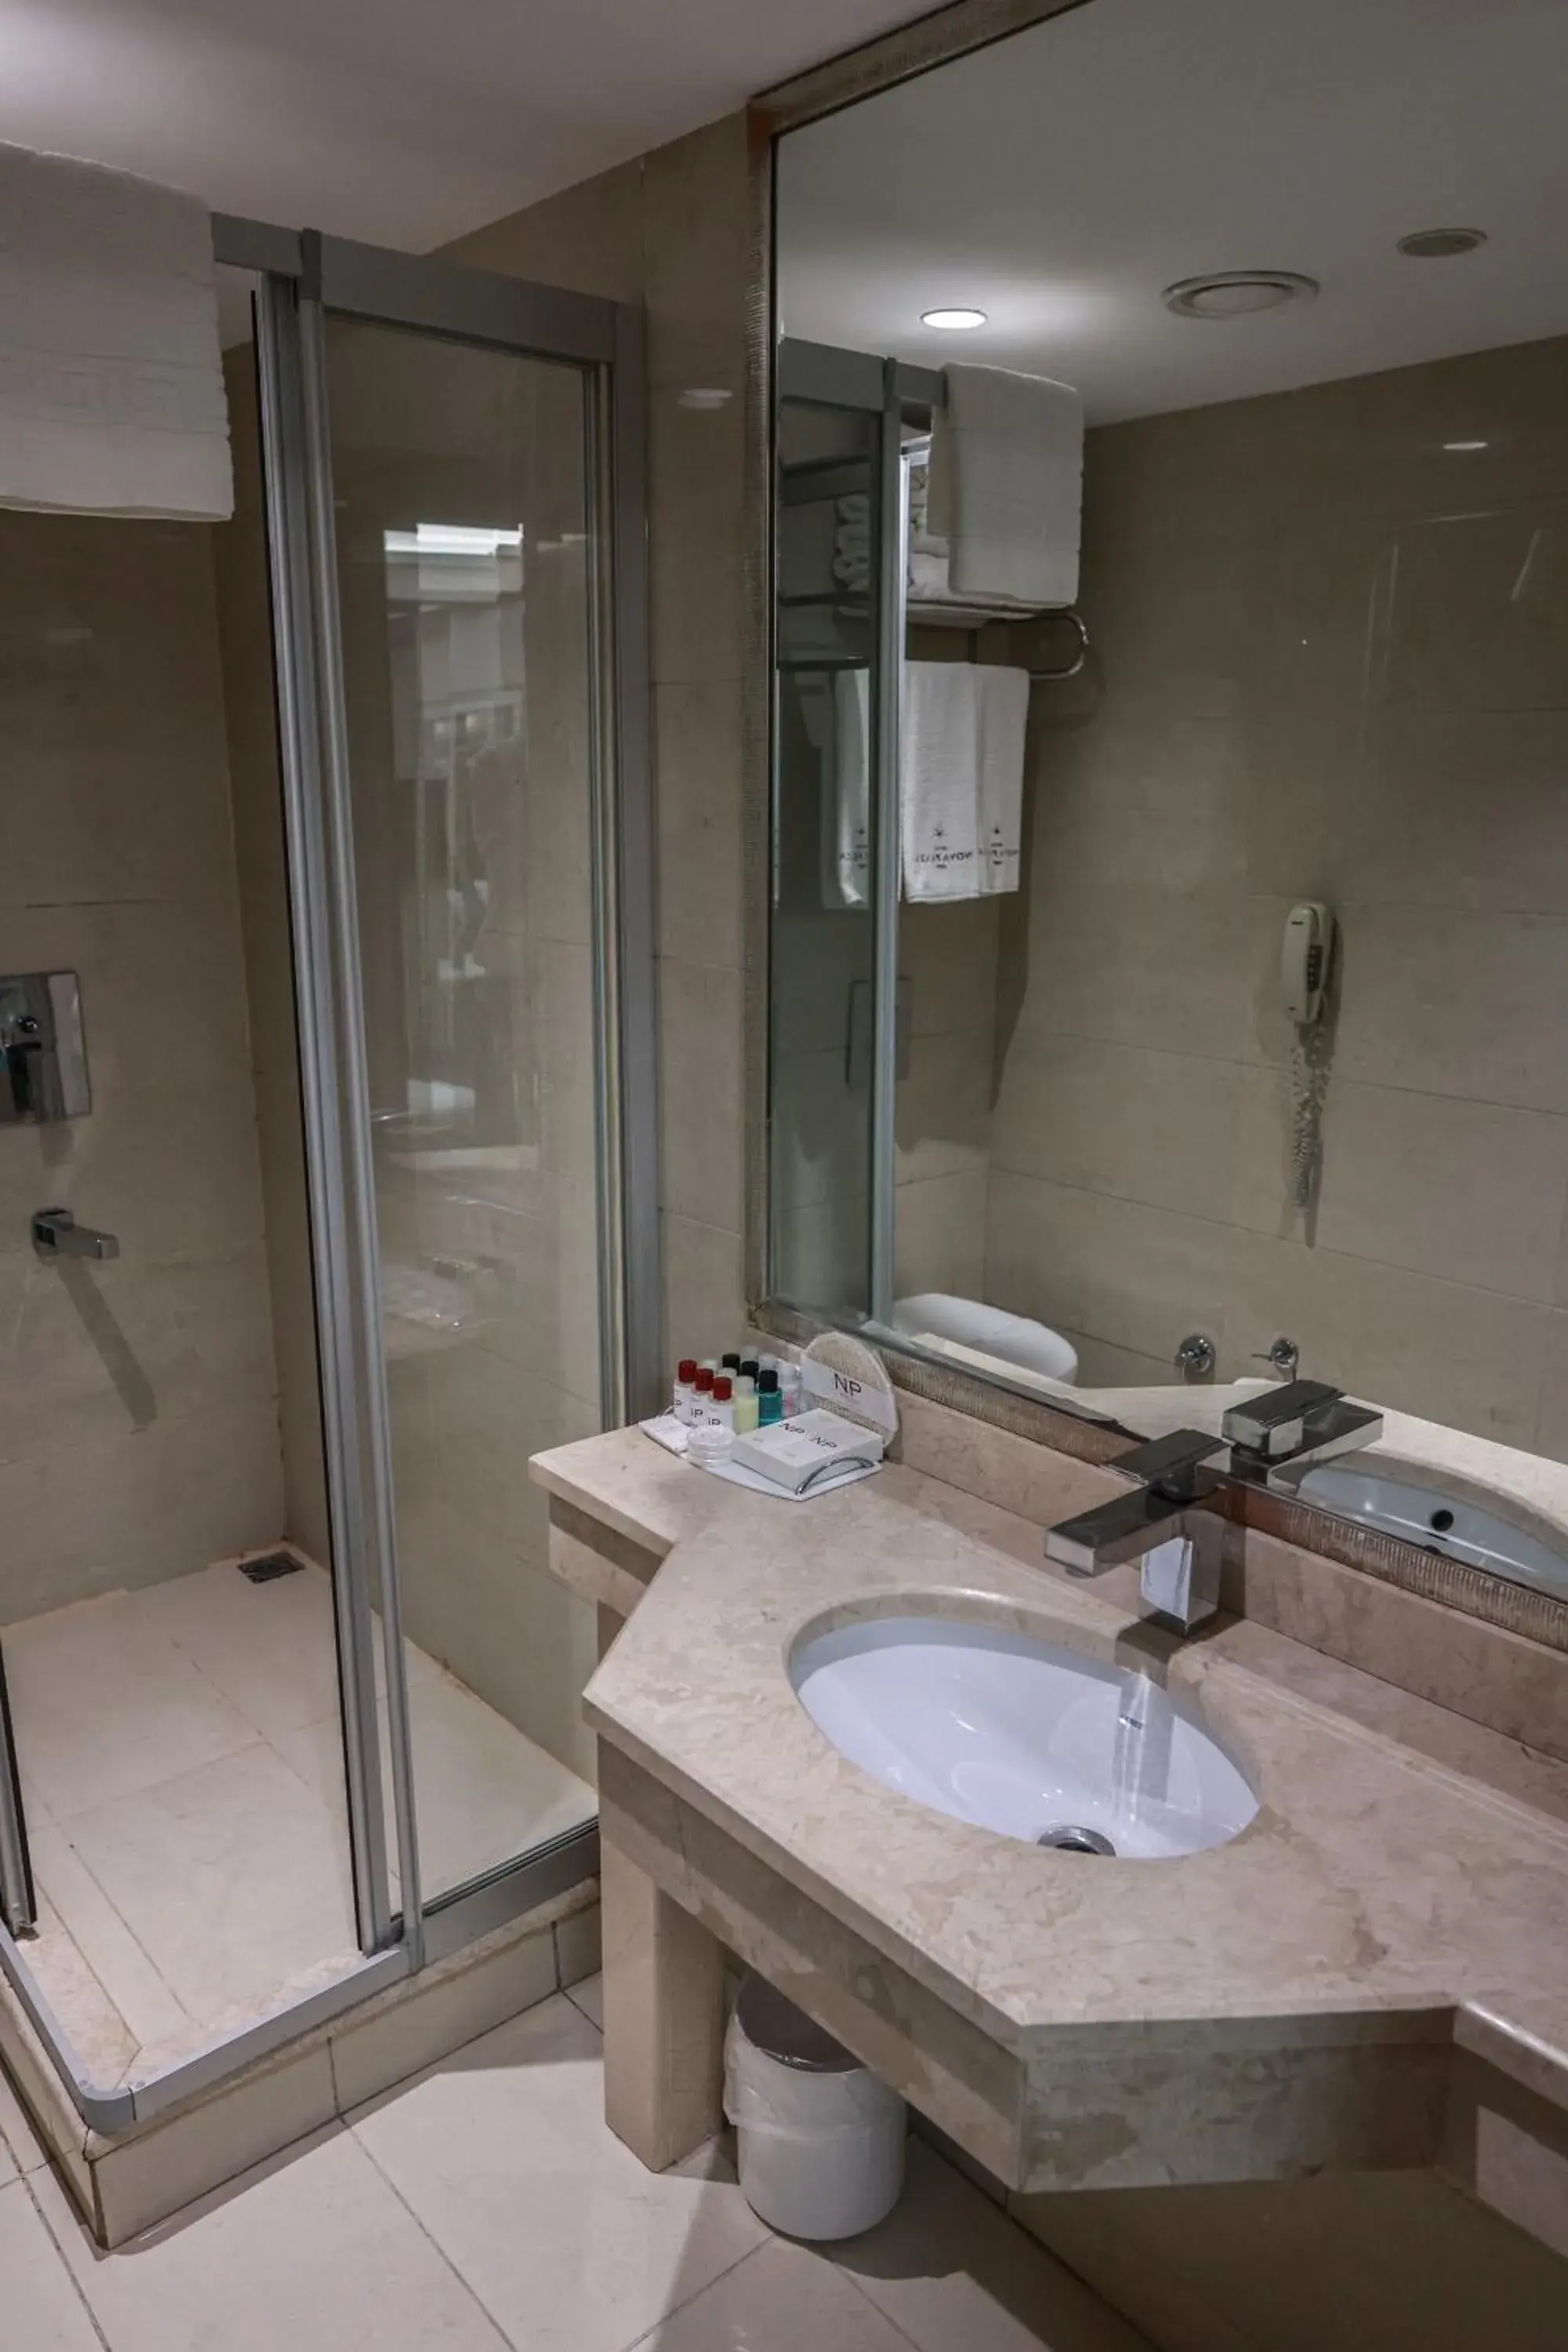 Shower, Bathroom in Nova Plaza Park Hotel